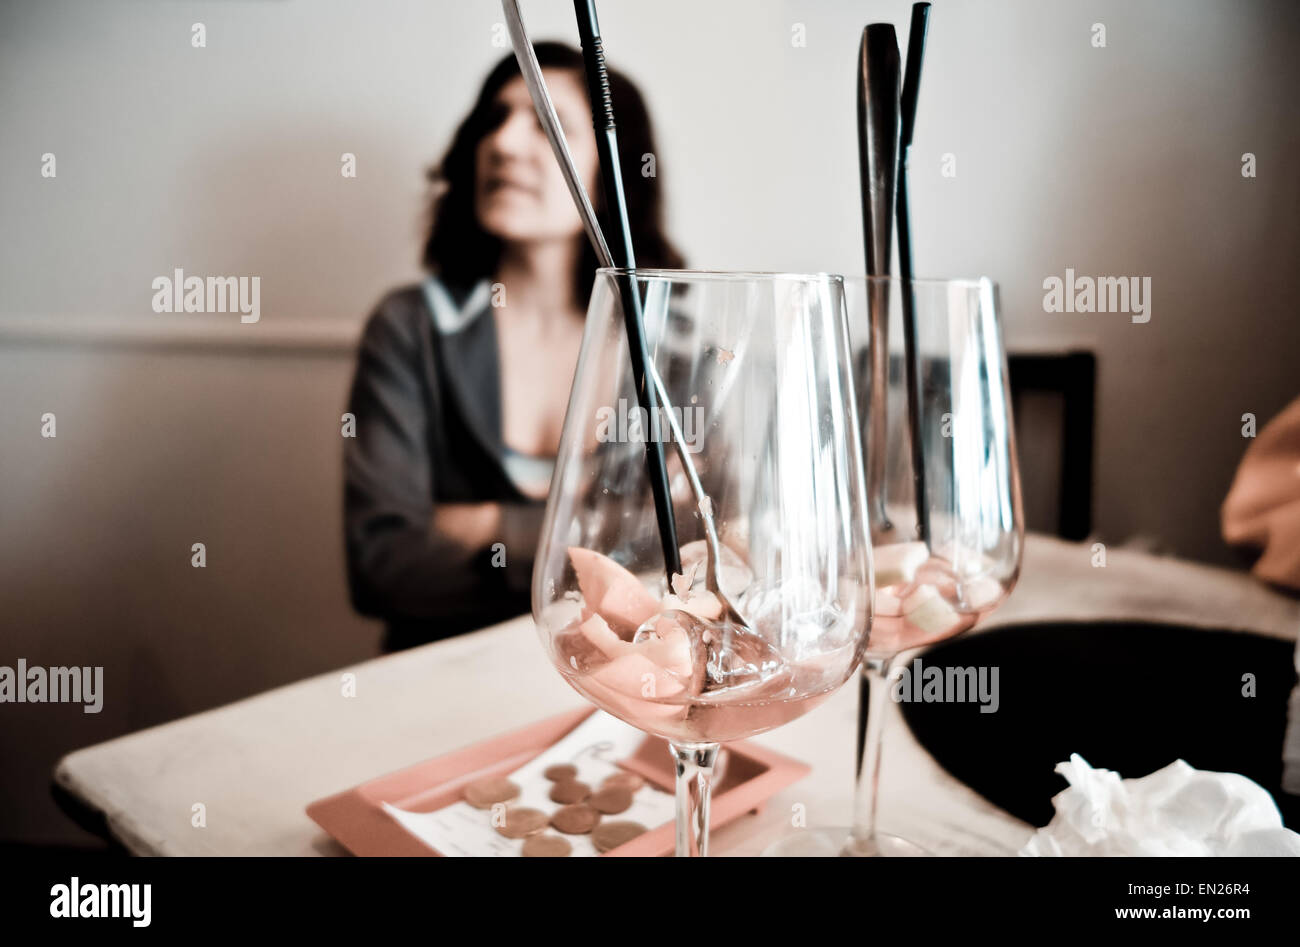 Femme en bar en attente, deux verres vides de Sangria avant-plan, avec facture payée à côté, l'Espagne. Banque D'Images